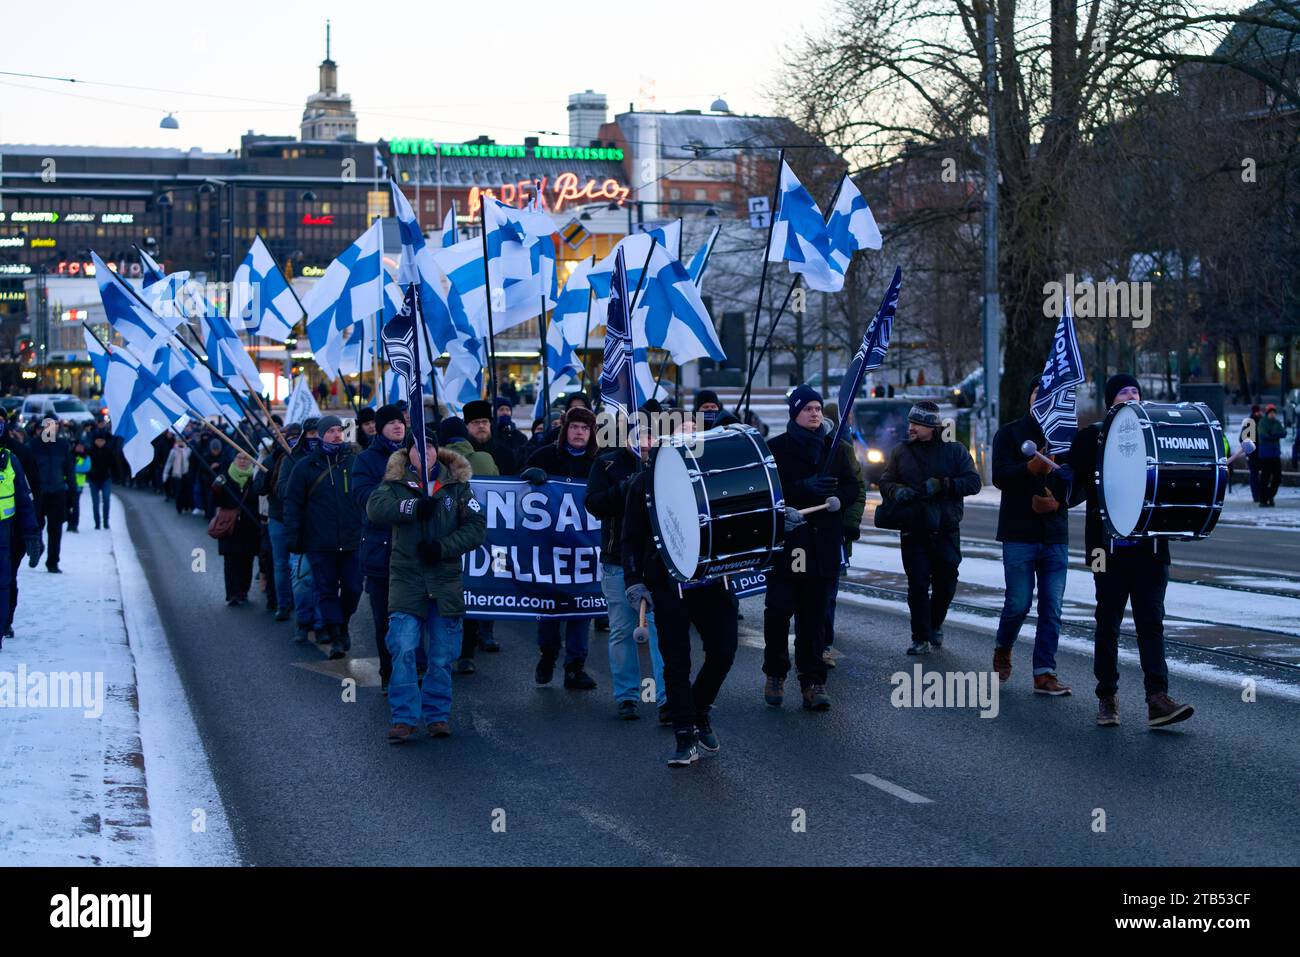 Helsinki, Finnland - 6. Dezember 2021: Die rechtsextreme ethnonationalistische Suomi herää Demonstration / Prozession auf der Mannerheimintie in der Nähe des Parlaments Stockfoto